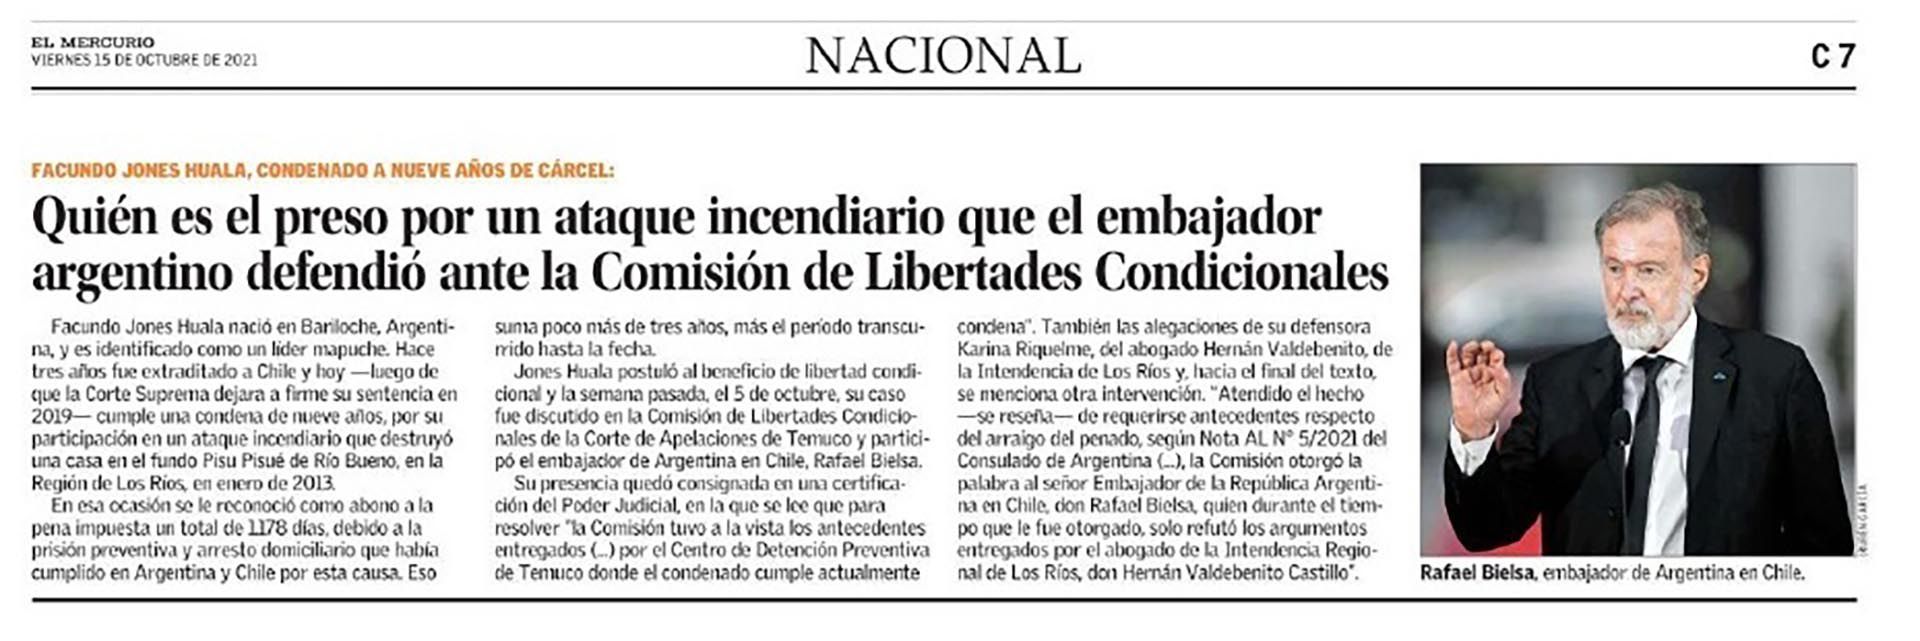 El embajador argentino en Chile, Rafael Bielsa, asistió a la audiencia en la que se analizaba el pedido de libertad condicional para Jones Huala (Fuente)